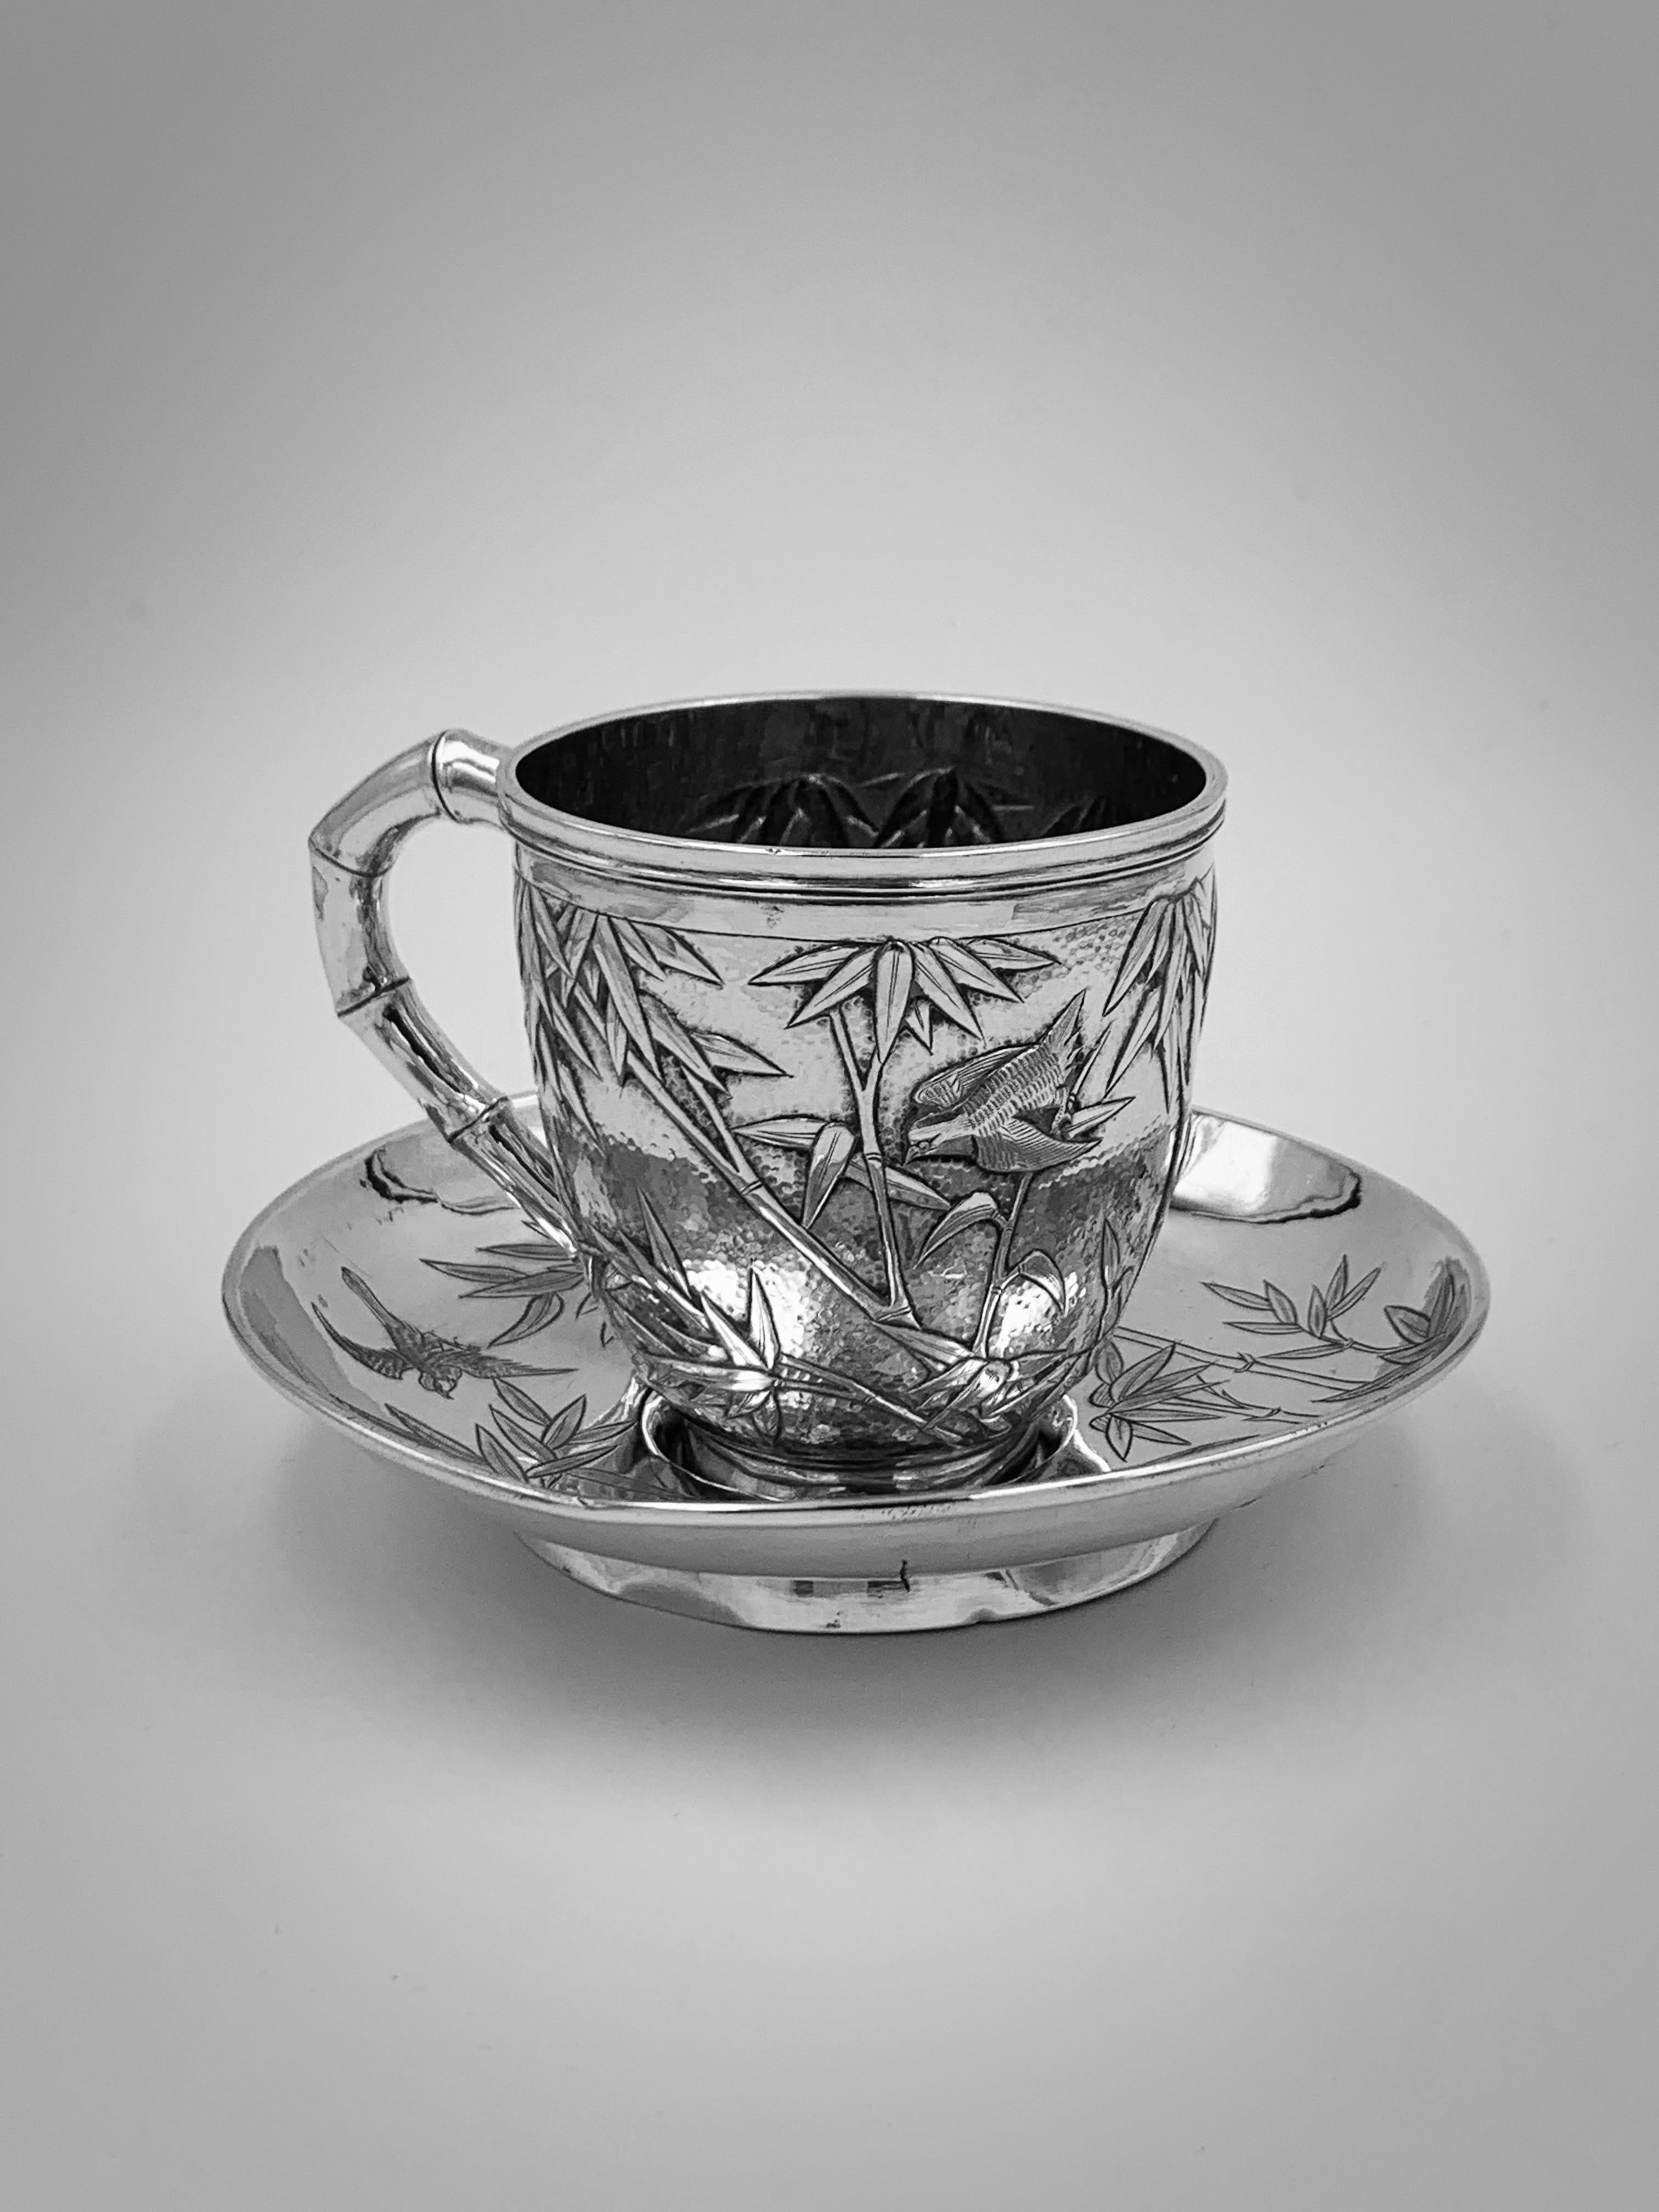 Tasse à thé et soucoupe en argent d'exportation chinoise fabriquée à Hong Kong vers 1900. La coupe est estampée et ciselée d'oiseaux et de bambous sur un fond mat, avec un seul cartouche vacant en forme de bouclier et une anse en forme de bambou. La